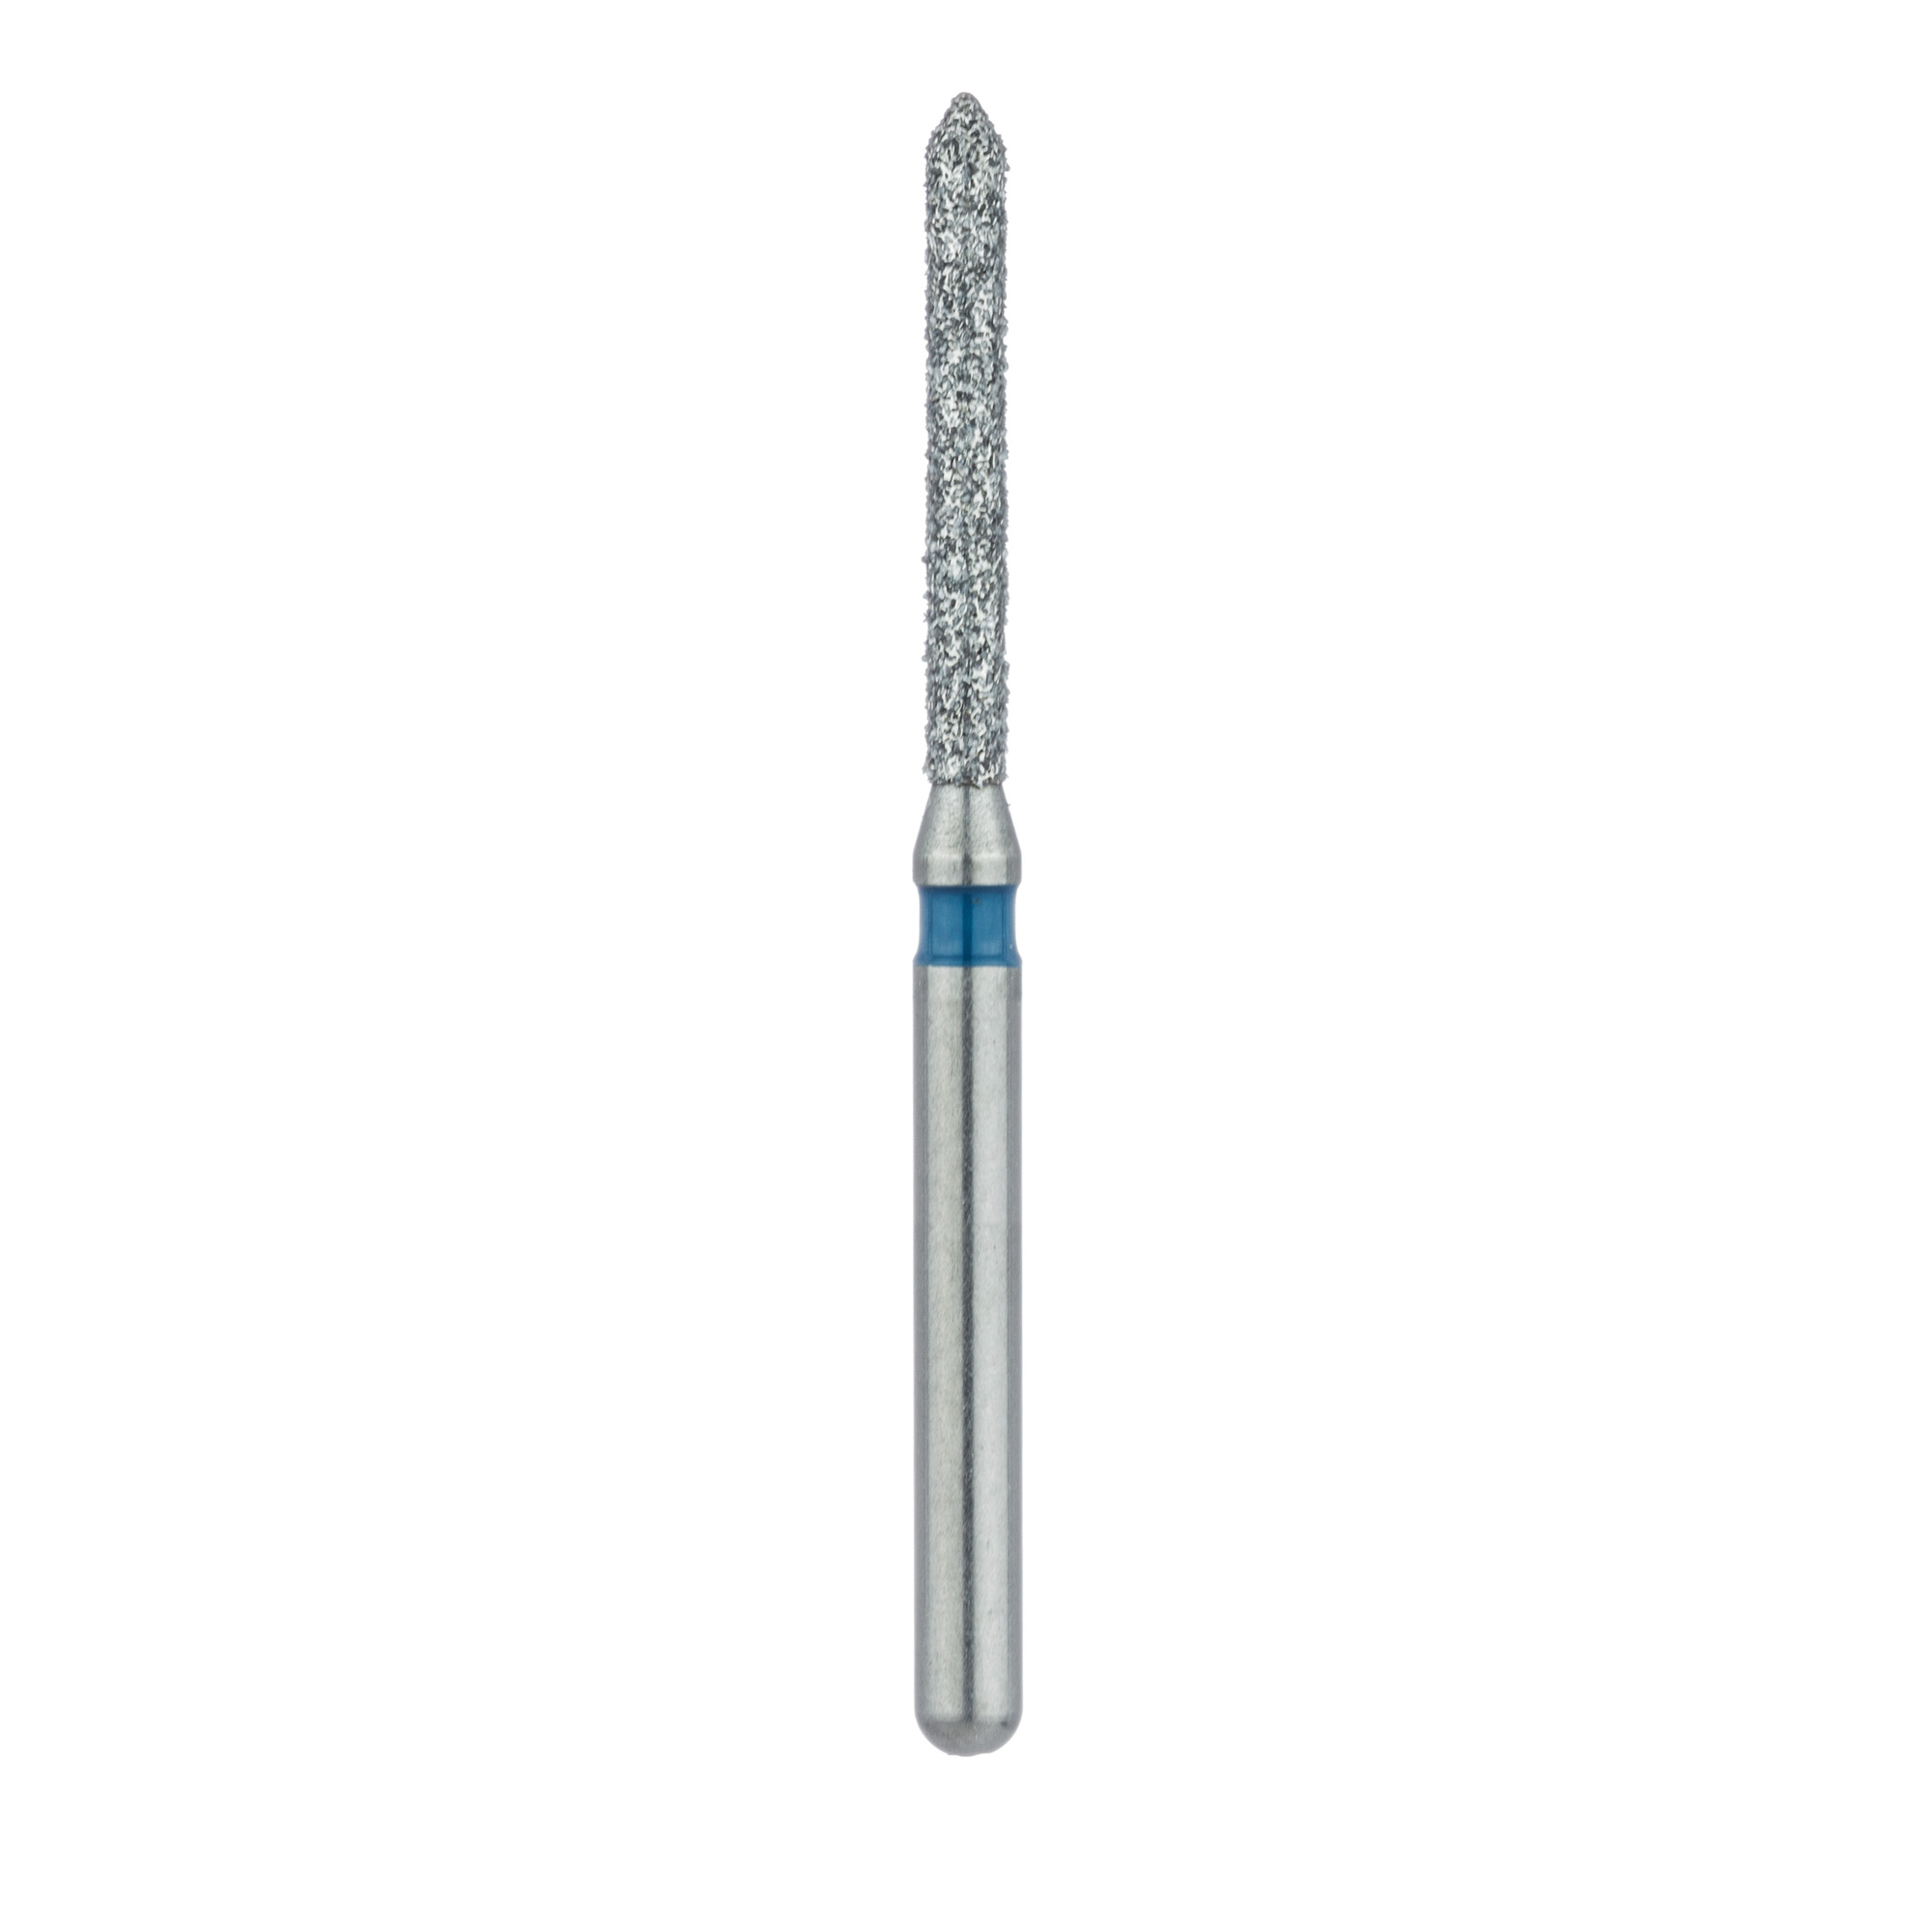 886-012-FG Long Pointed Tip Cylinder Diamond Bur, 1.2mm Ø, Medium, FG